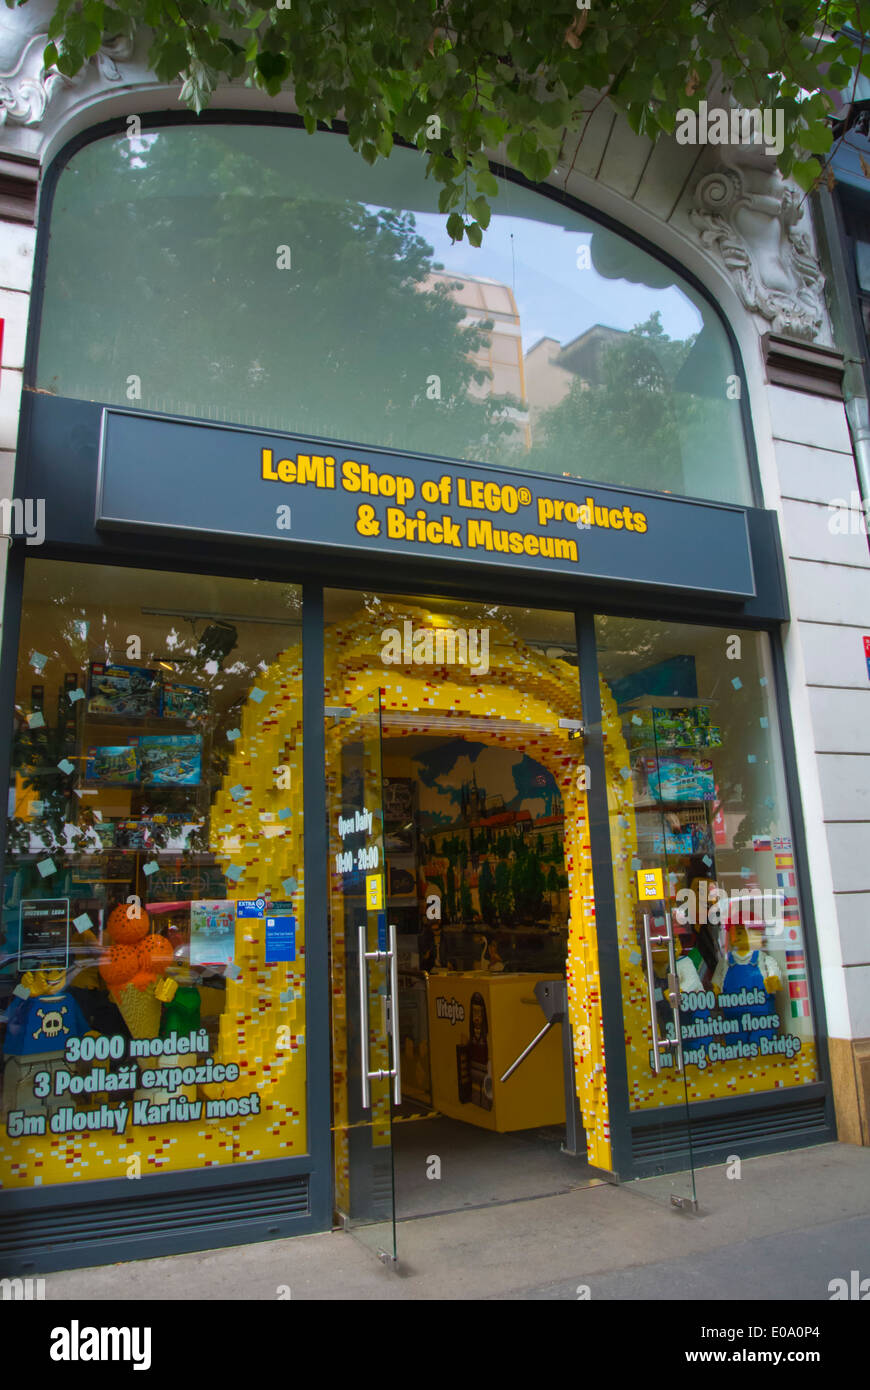 Muzeum Lega, Lego museum and shop, Narodni Trida street, central Prague, Czech Republic, Europe - Alamy